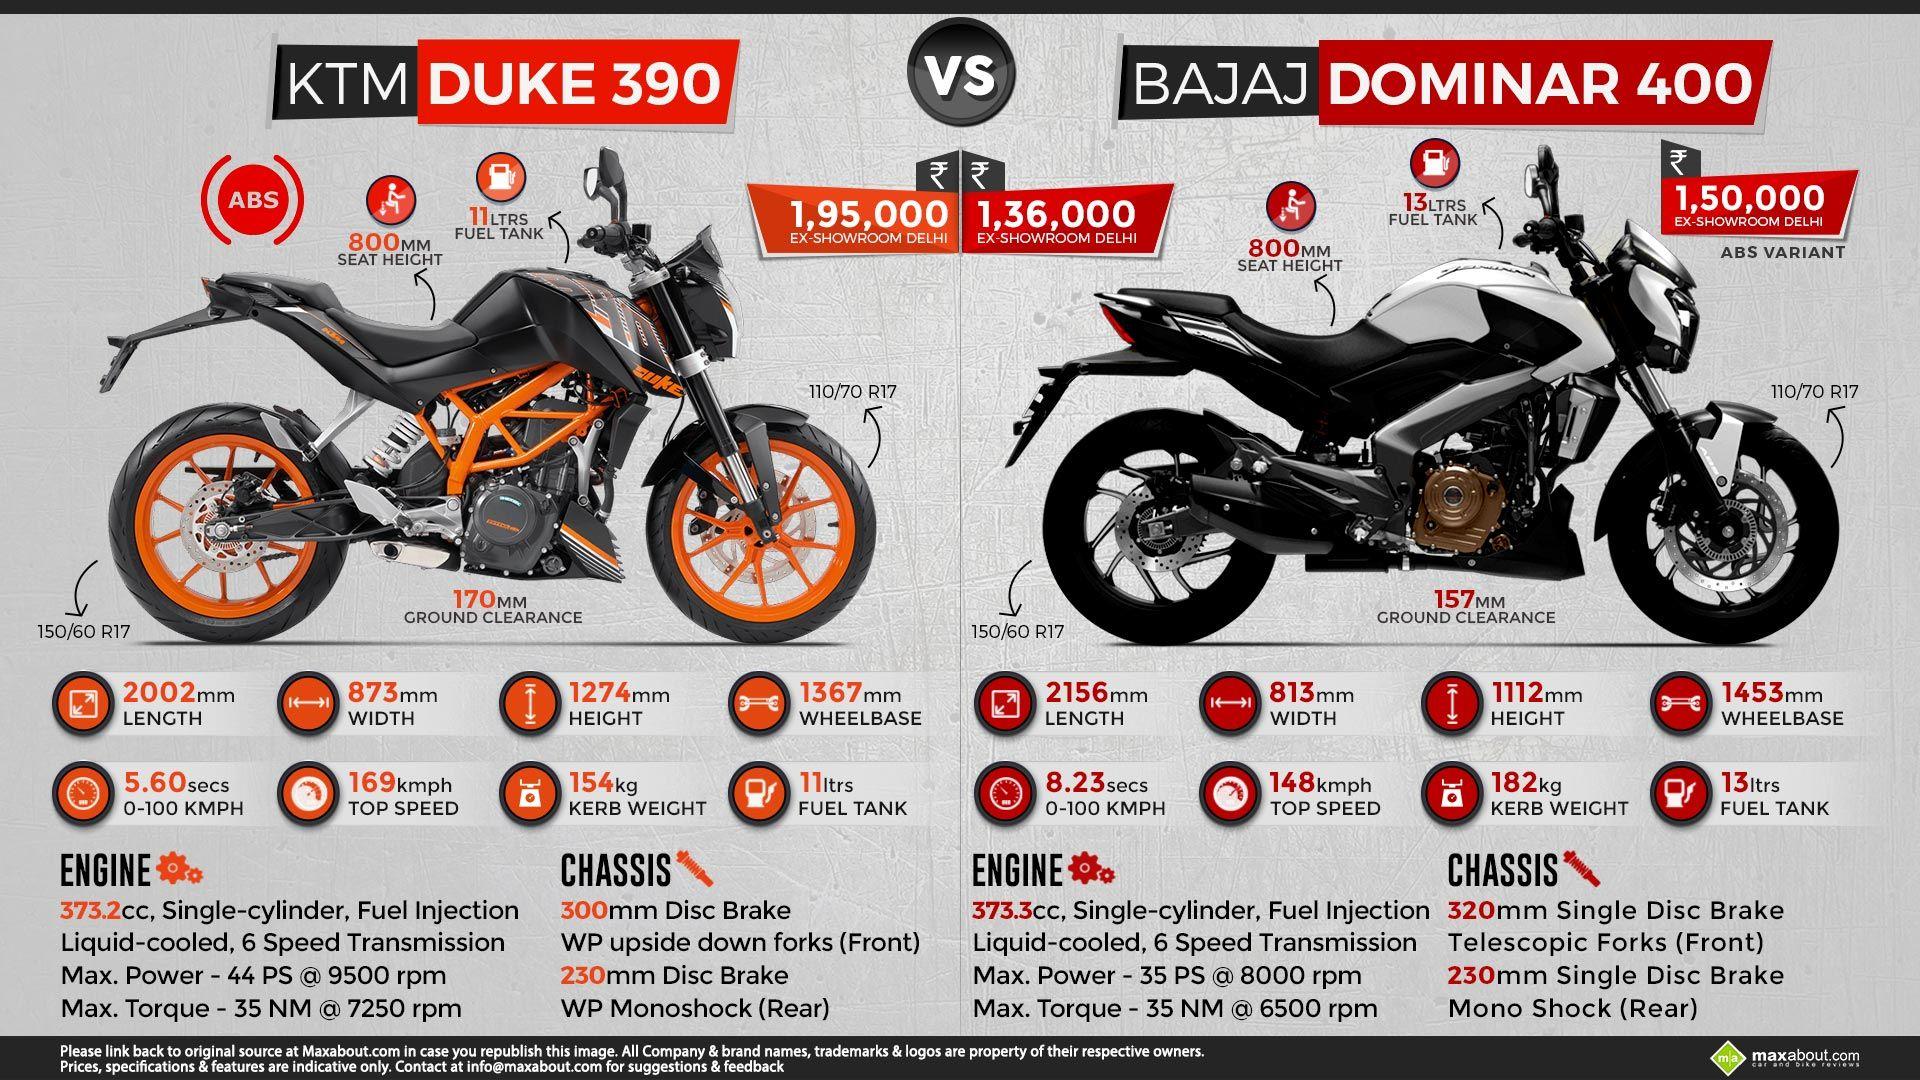 Quick Comparison: KTM Duke 390 vs. Bajaj Dominar 400